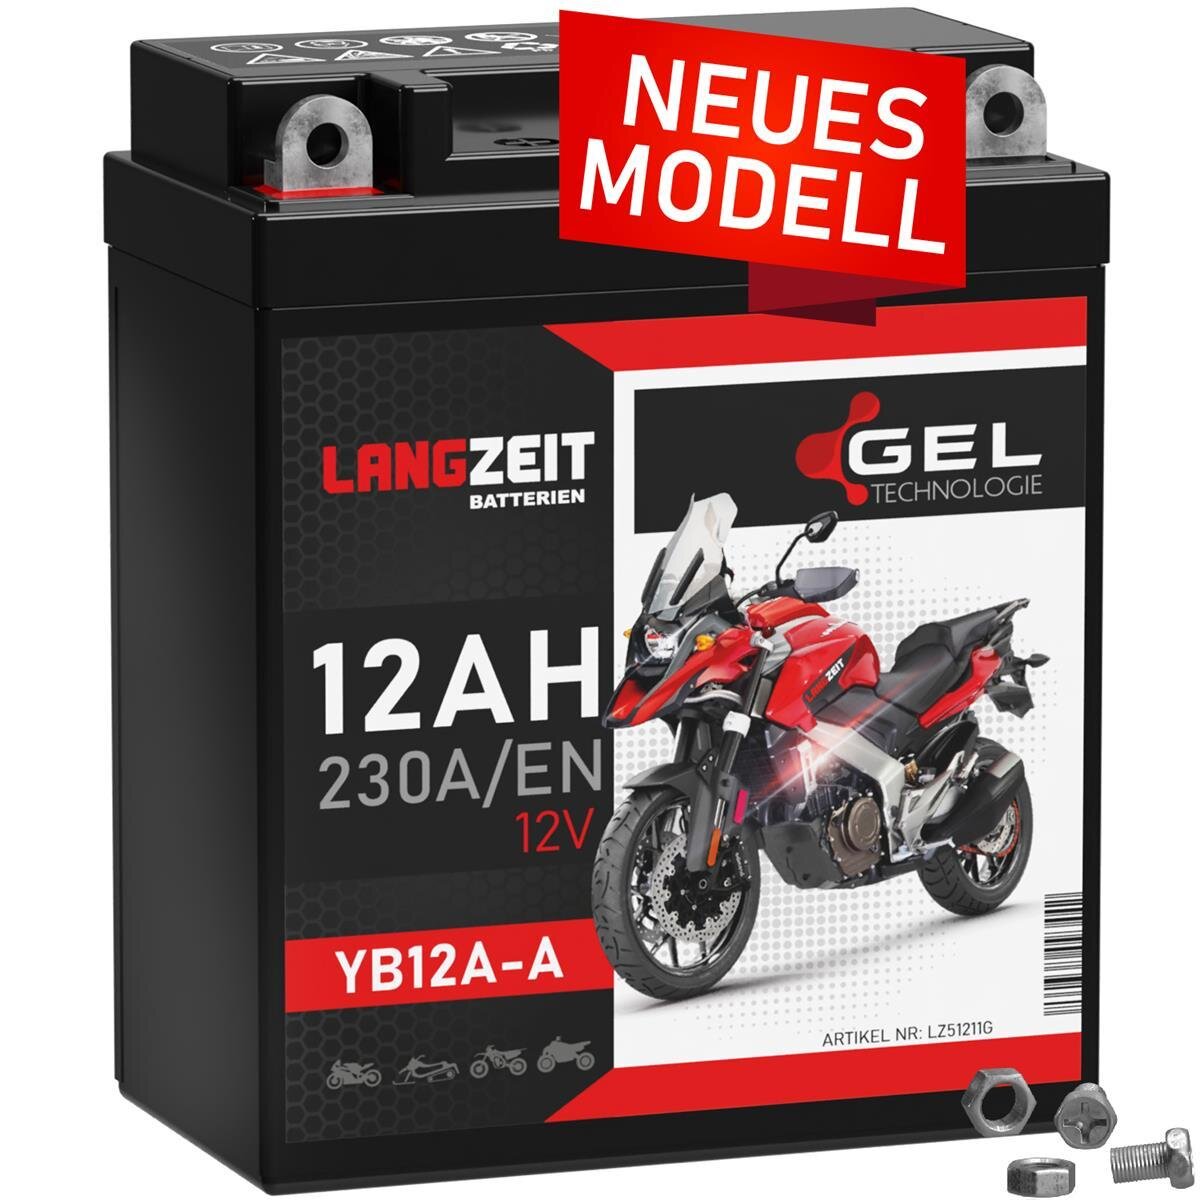 https://www.winnerbatterien.de/media/image/product/6177/lg/langzeit-gel-motorradbatterie-yb12a-a-12ah-12v.jpg